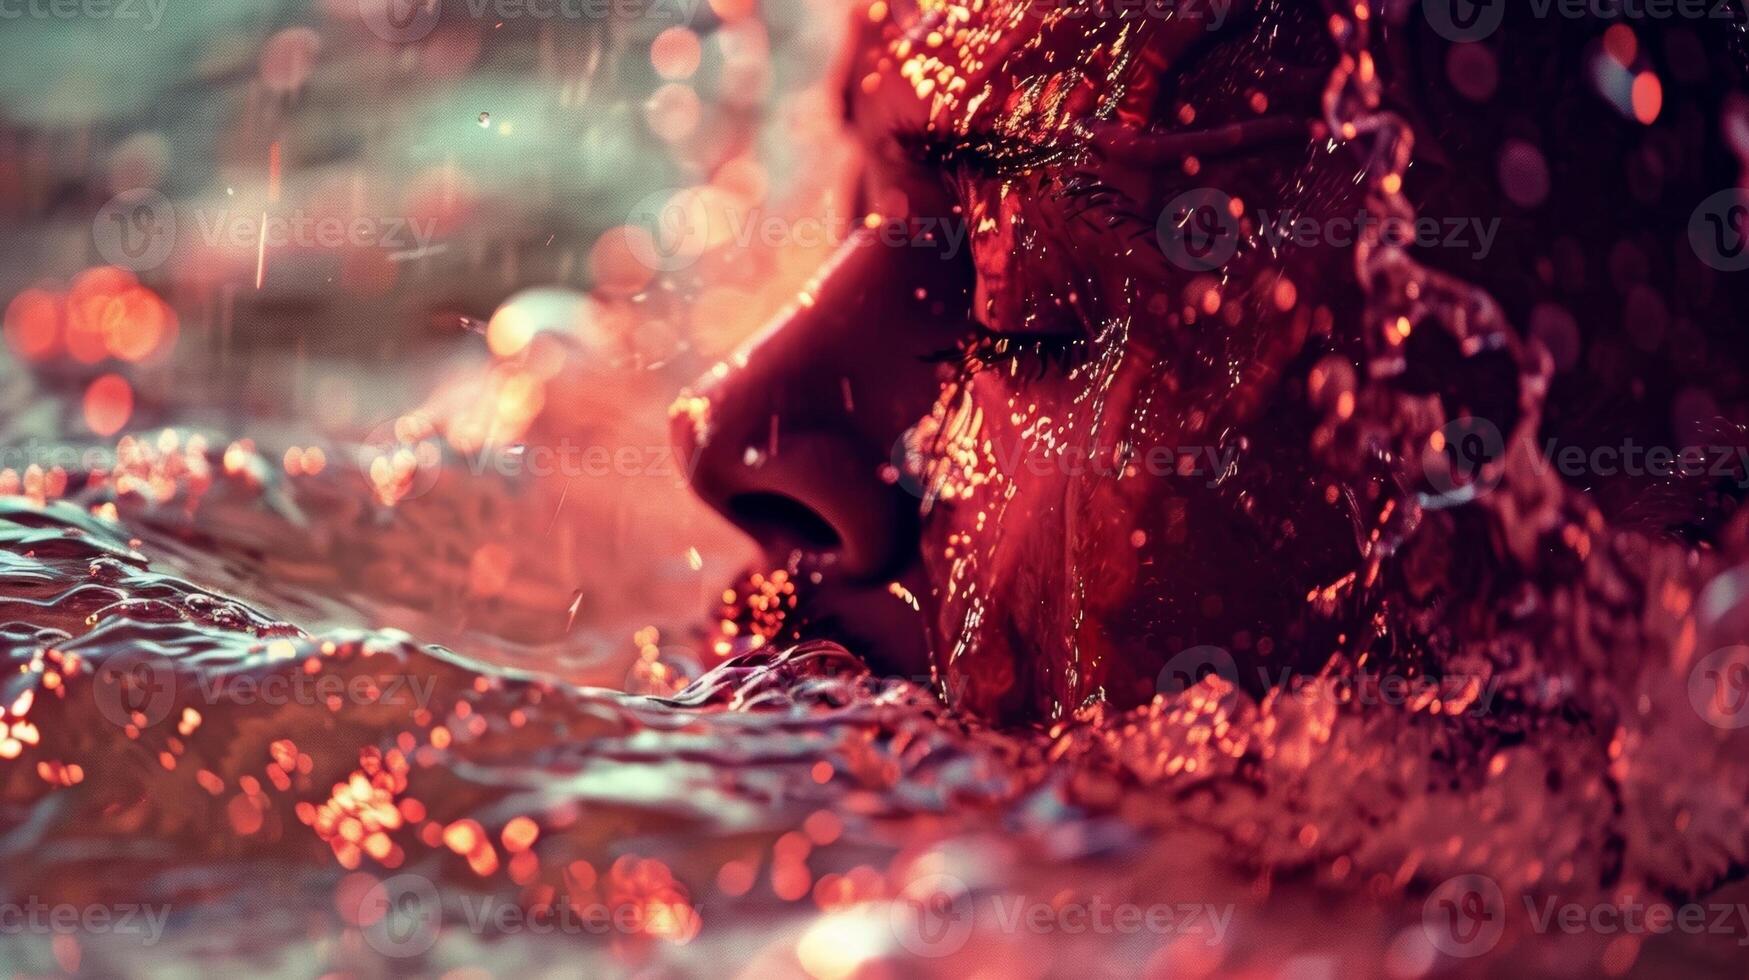 een detailopname van een personen huid rood en tintelend van de contrast tussen een sauna en een duik in verkoudheid water. foto